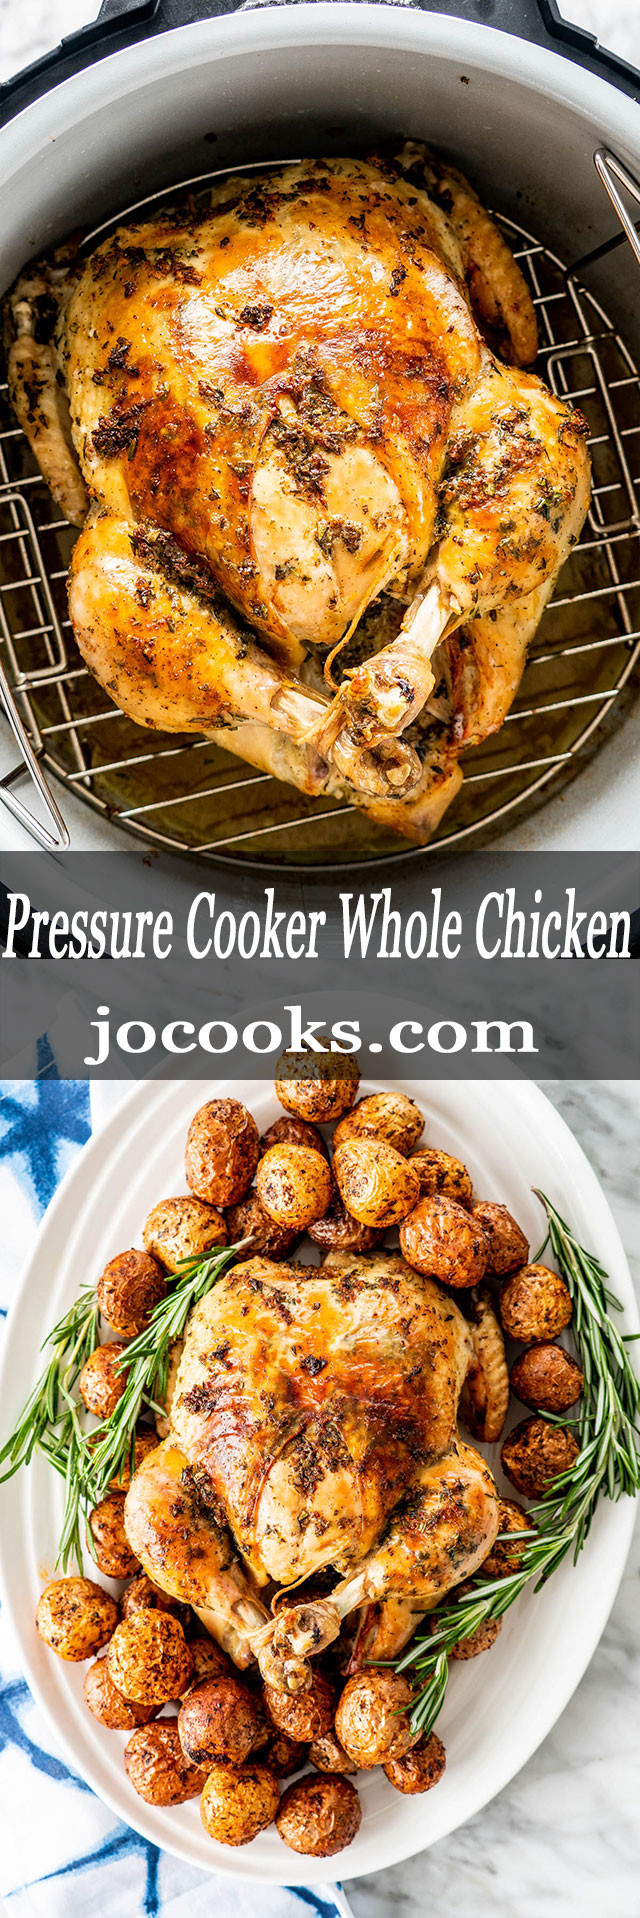 Pressure Cook Whole Chicken Recipe
 Pressure Cooker Whole Chicken Jo Cooks